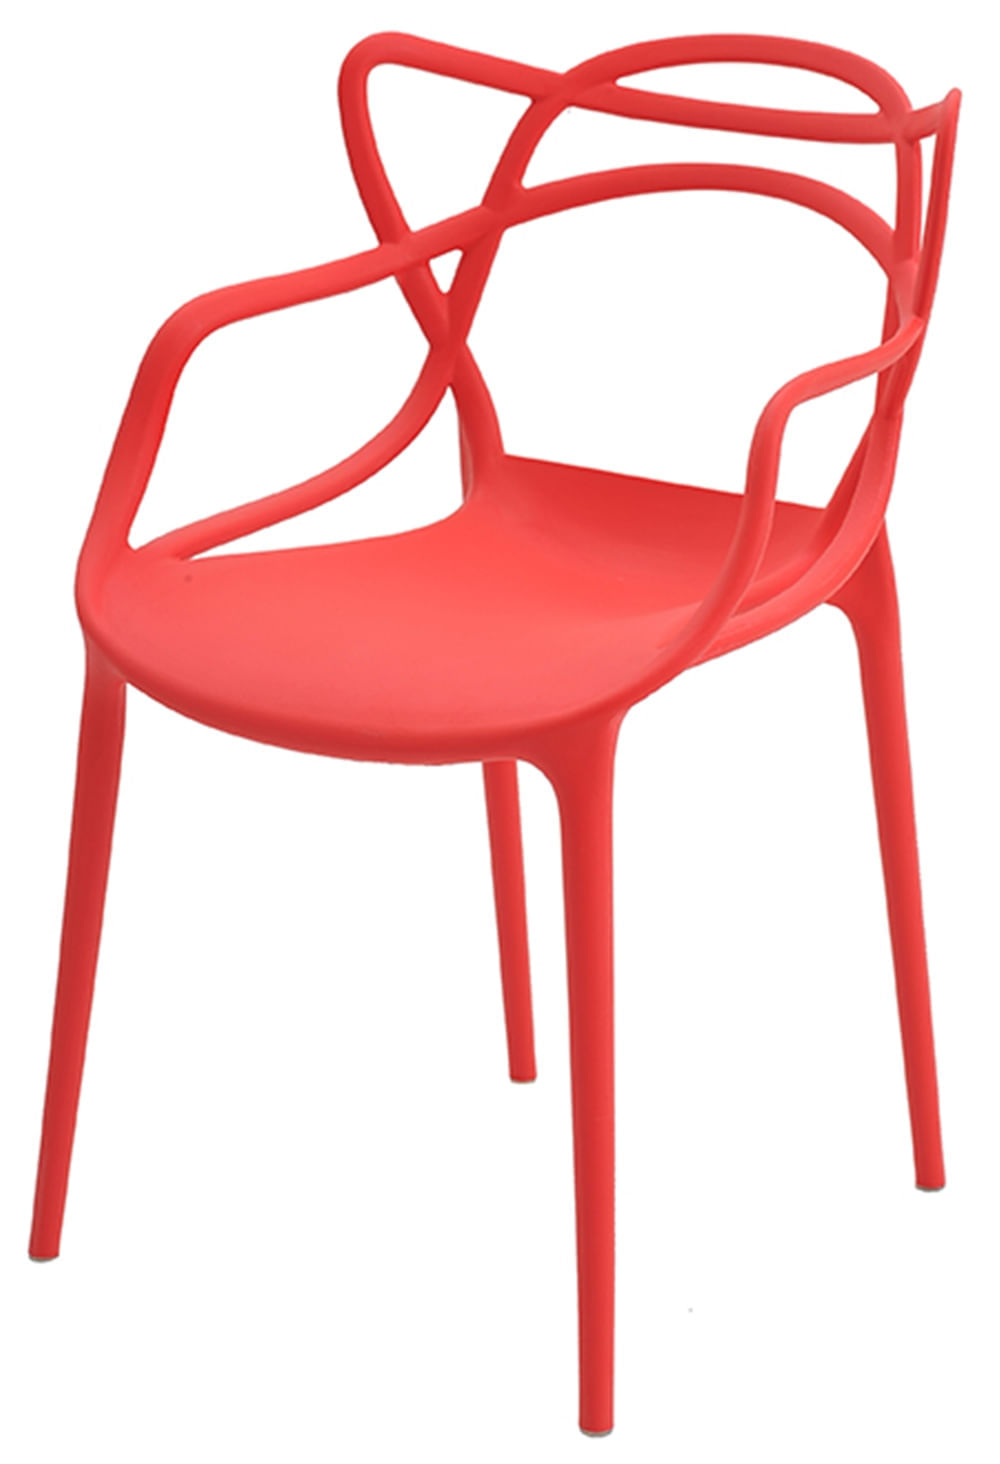 Cadeira INFANTIL Allegra Polipropileno Vermelha - 38192